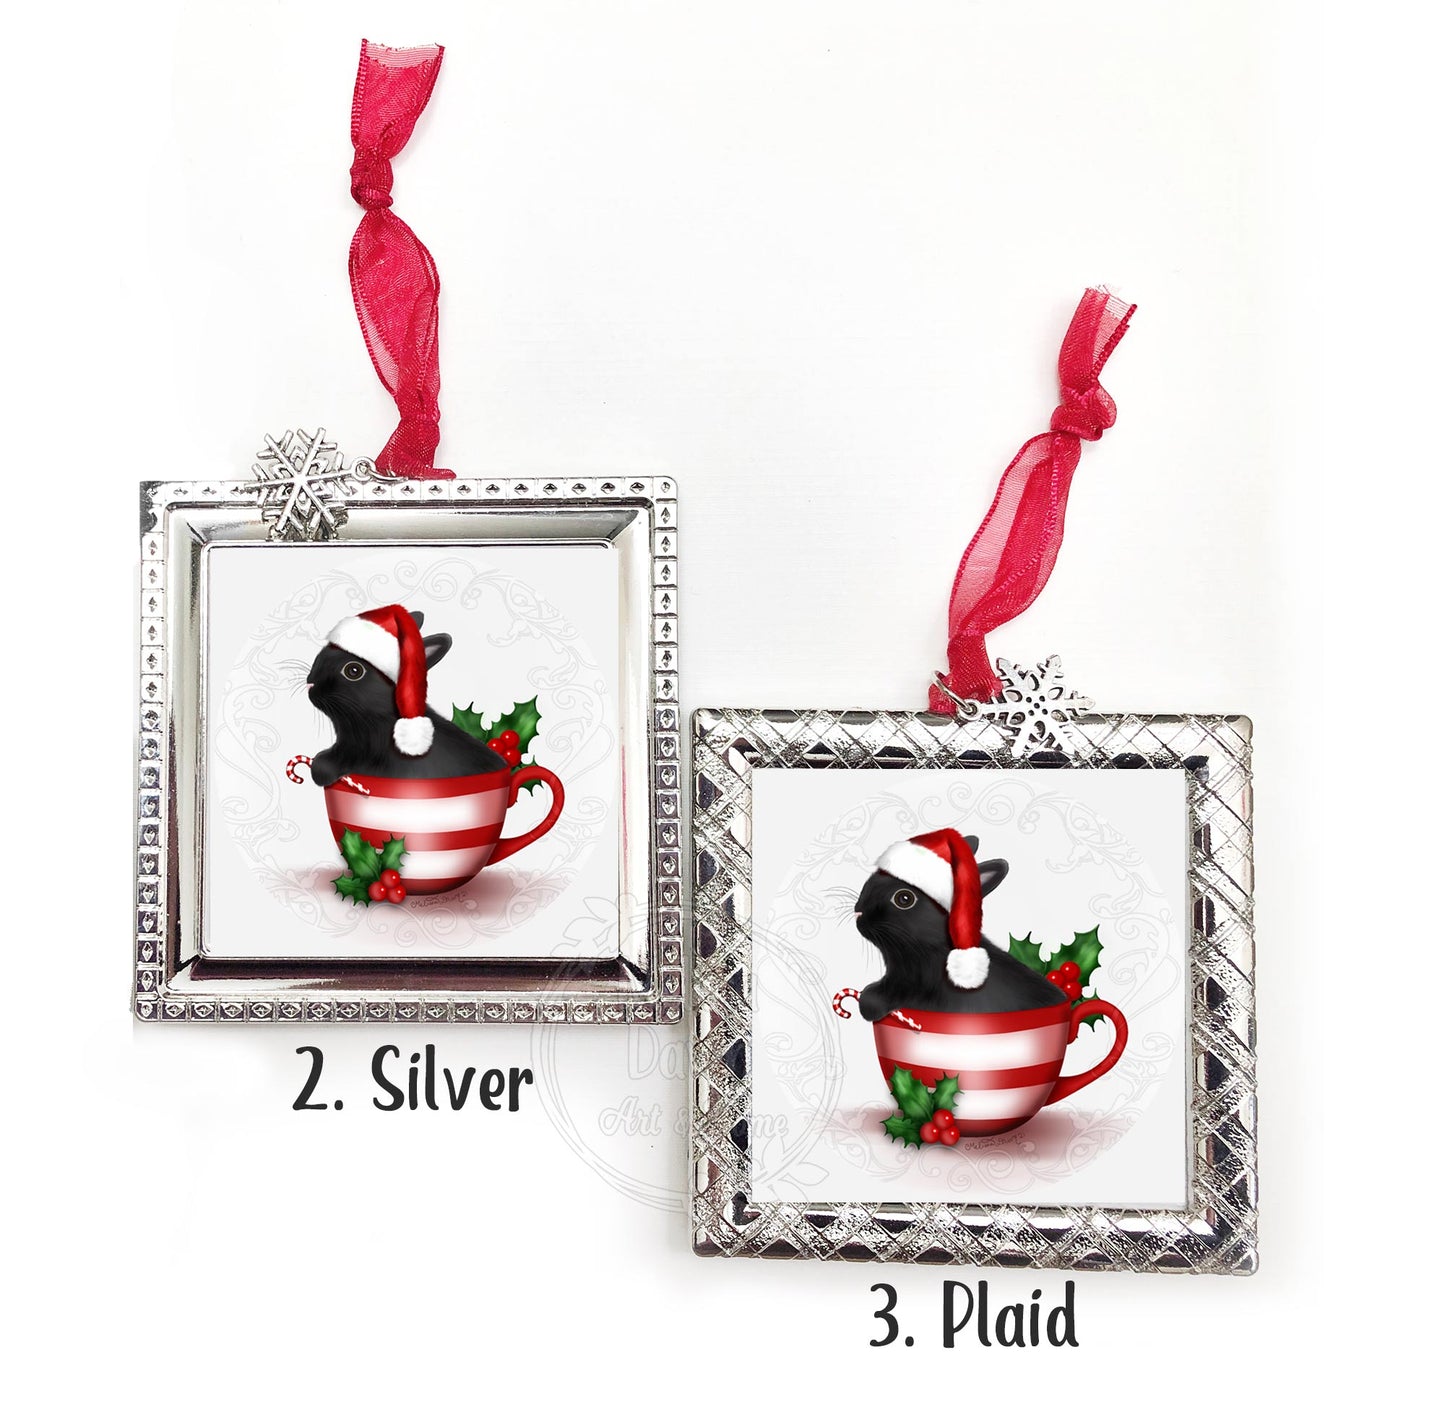 Black Bunny Ornament / Black Rabbit Ornament / Personalized Bunny Ornament / Bunny Ornament / Bunny Lovers Gift / Santa Bunny Ornament / Santa Bunny / Bunny Ornament With Name / Square Ornament